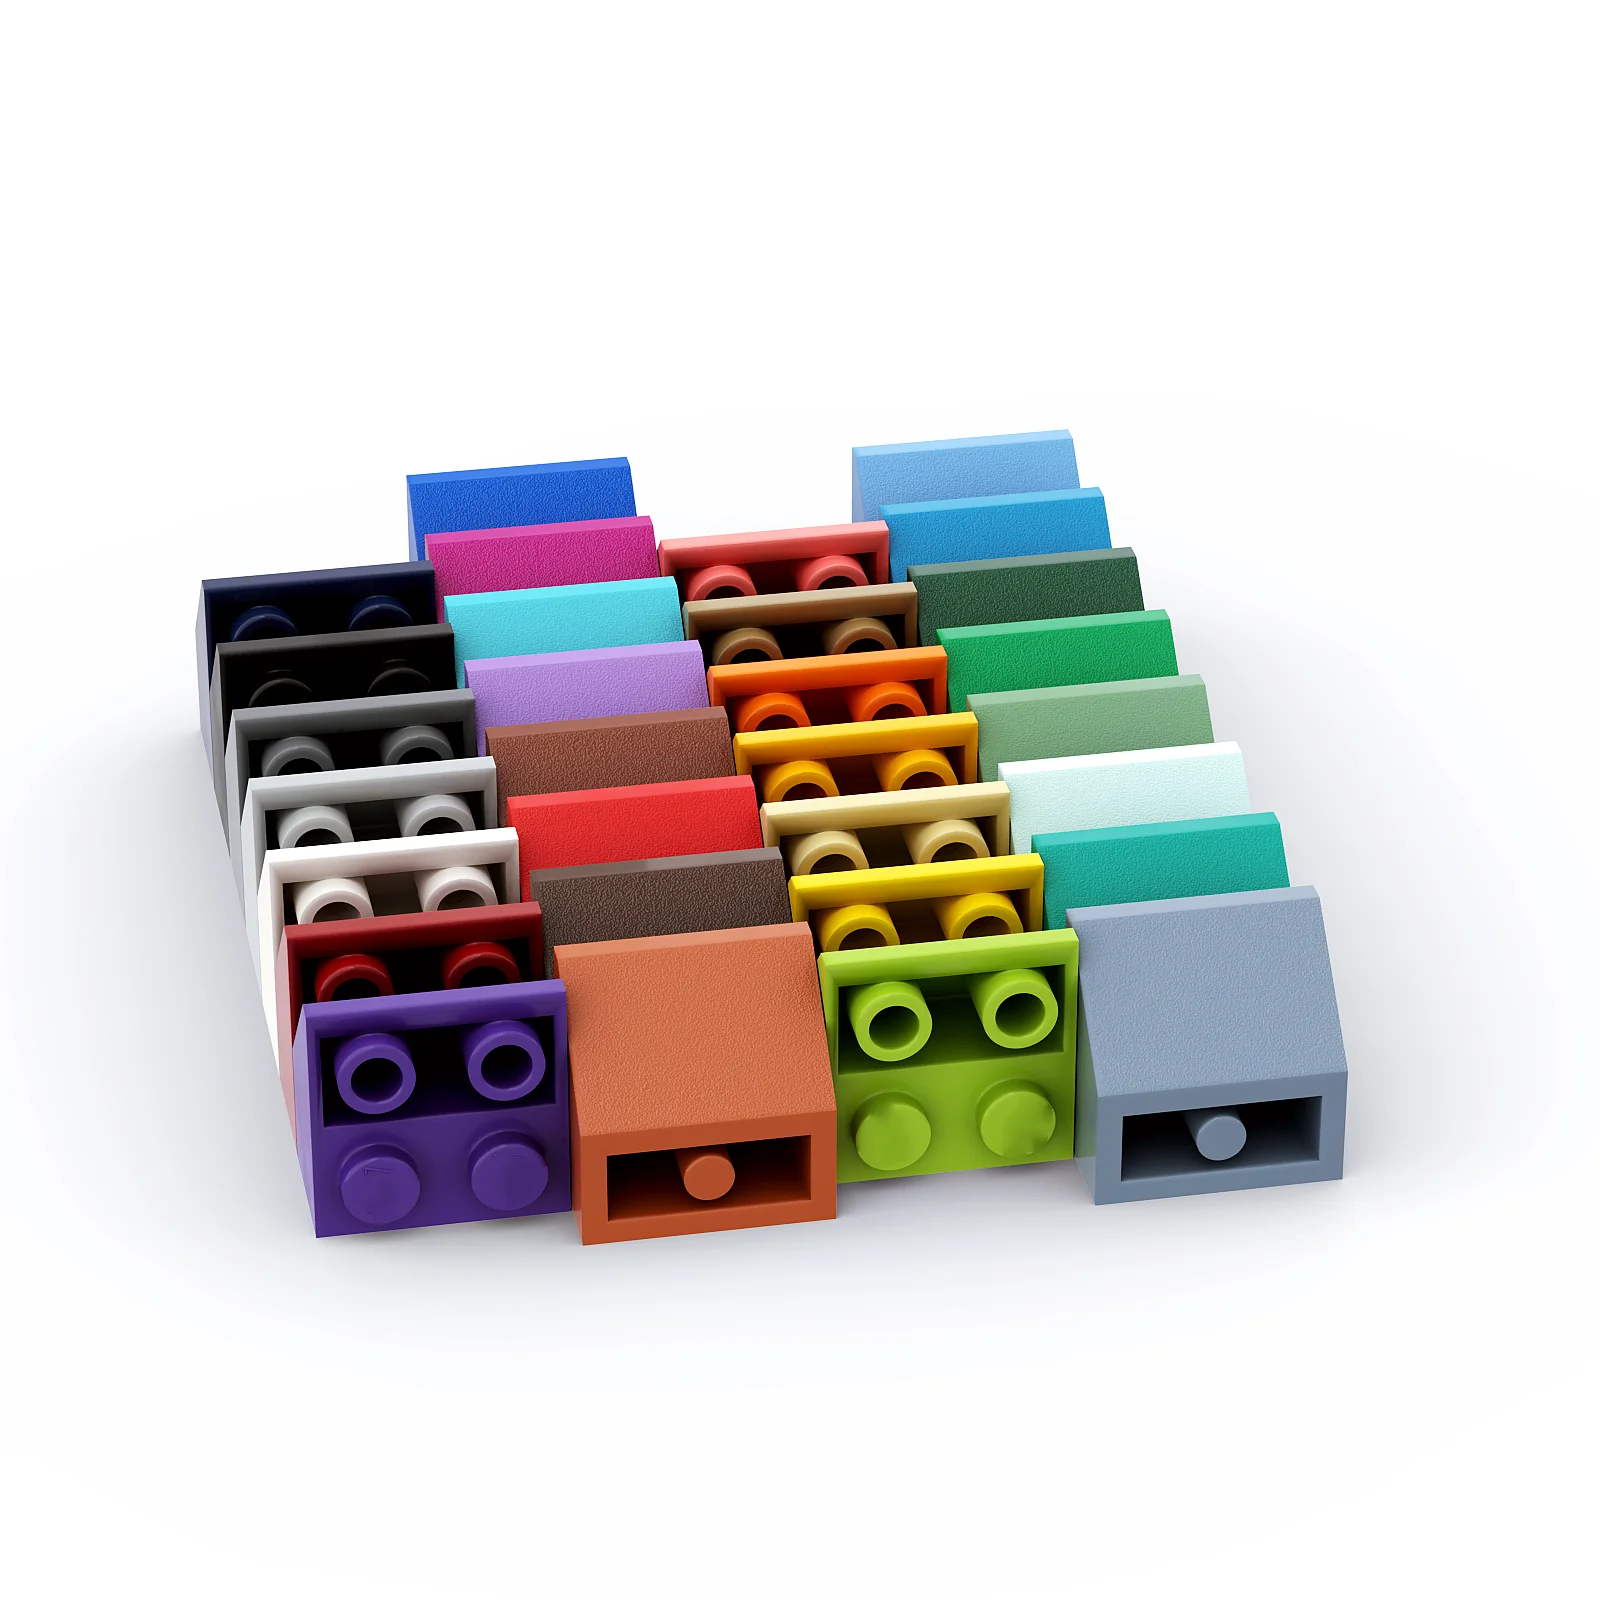 

1 шт. строительные блоки 3660 склон, перевернутый 45 2x2 коллекции, модульная игрушка GBC для технического набора MOC